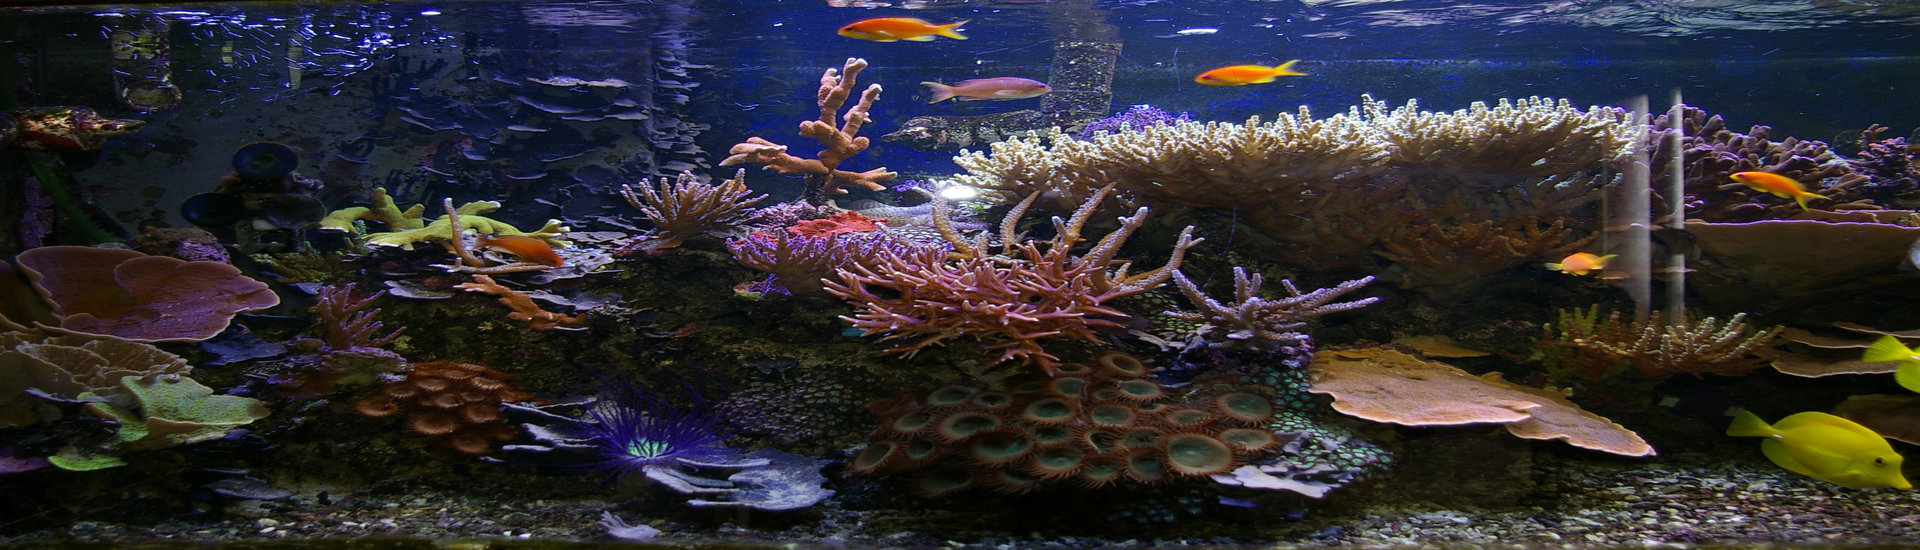 tropical saltwater aquarium